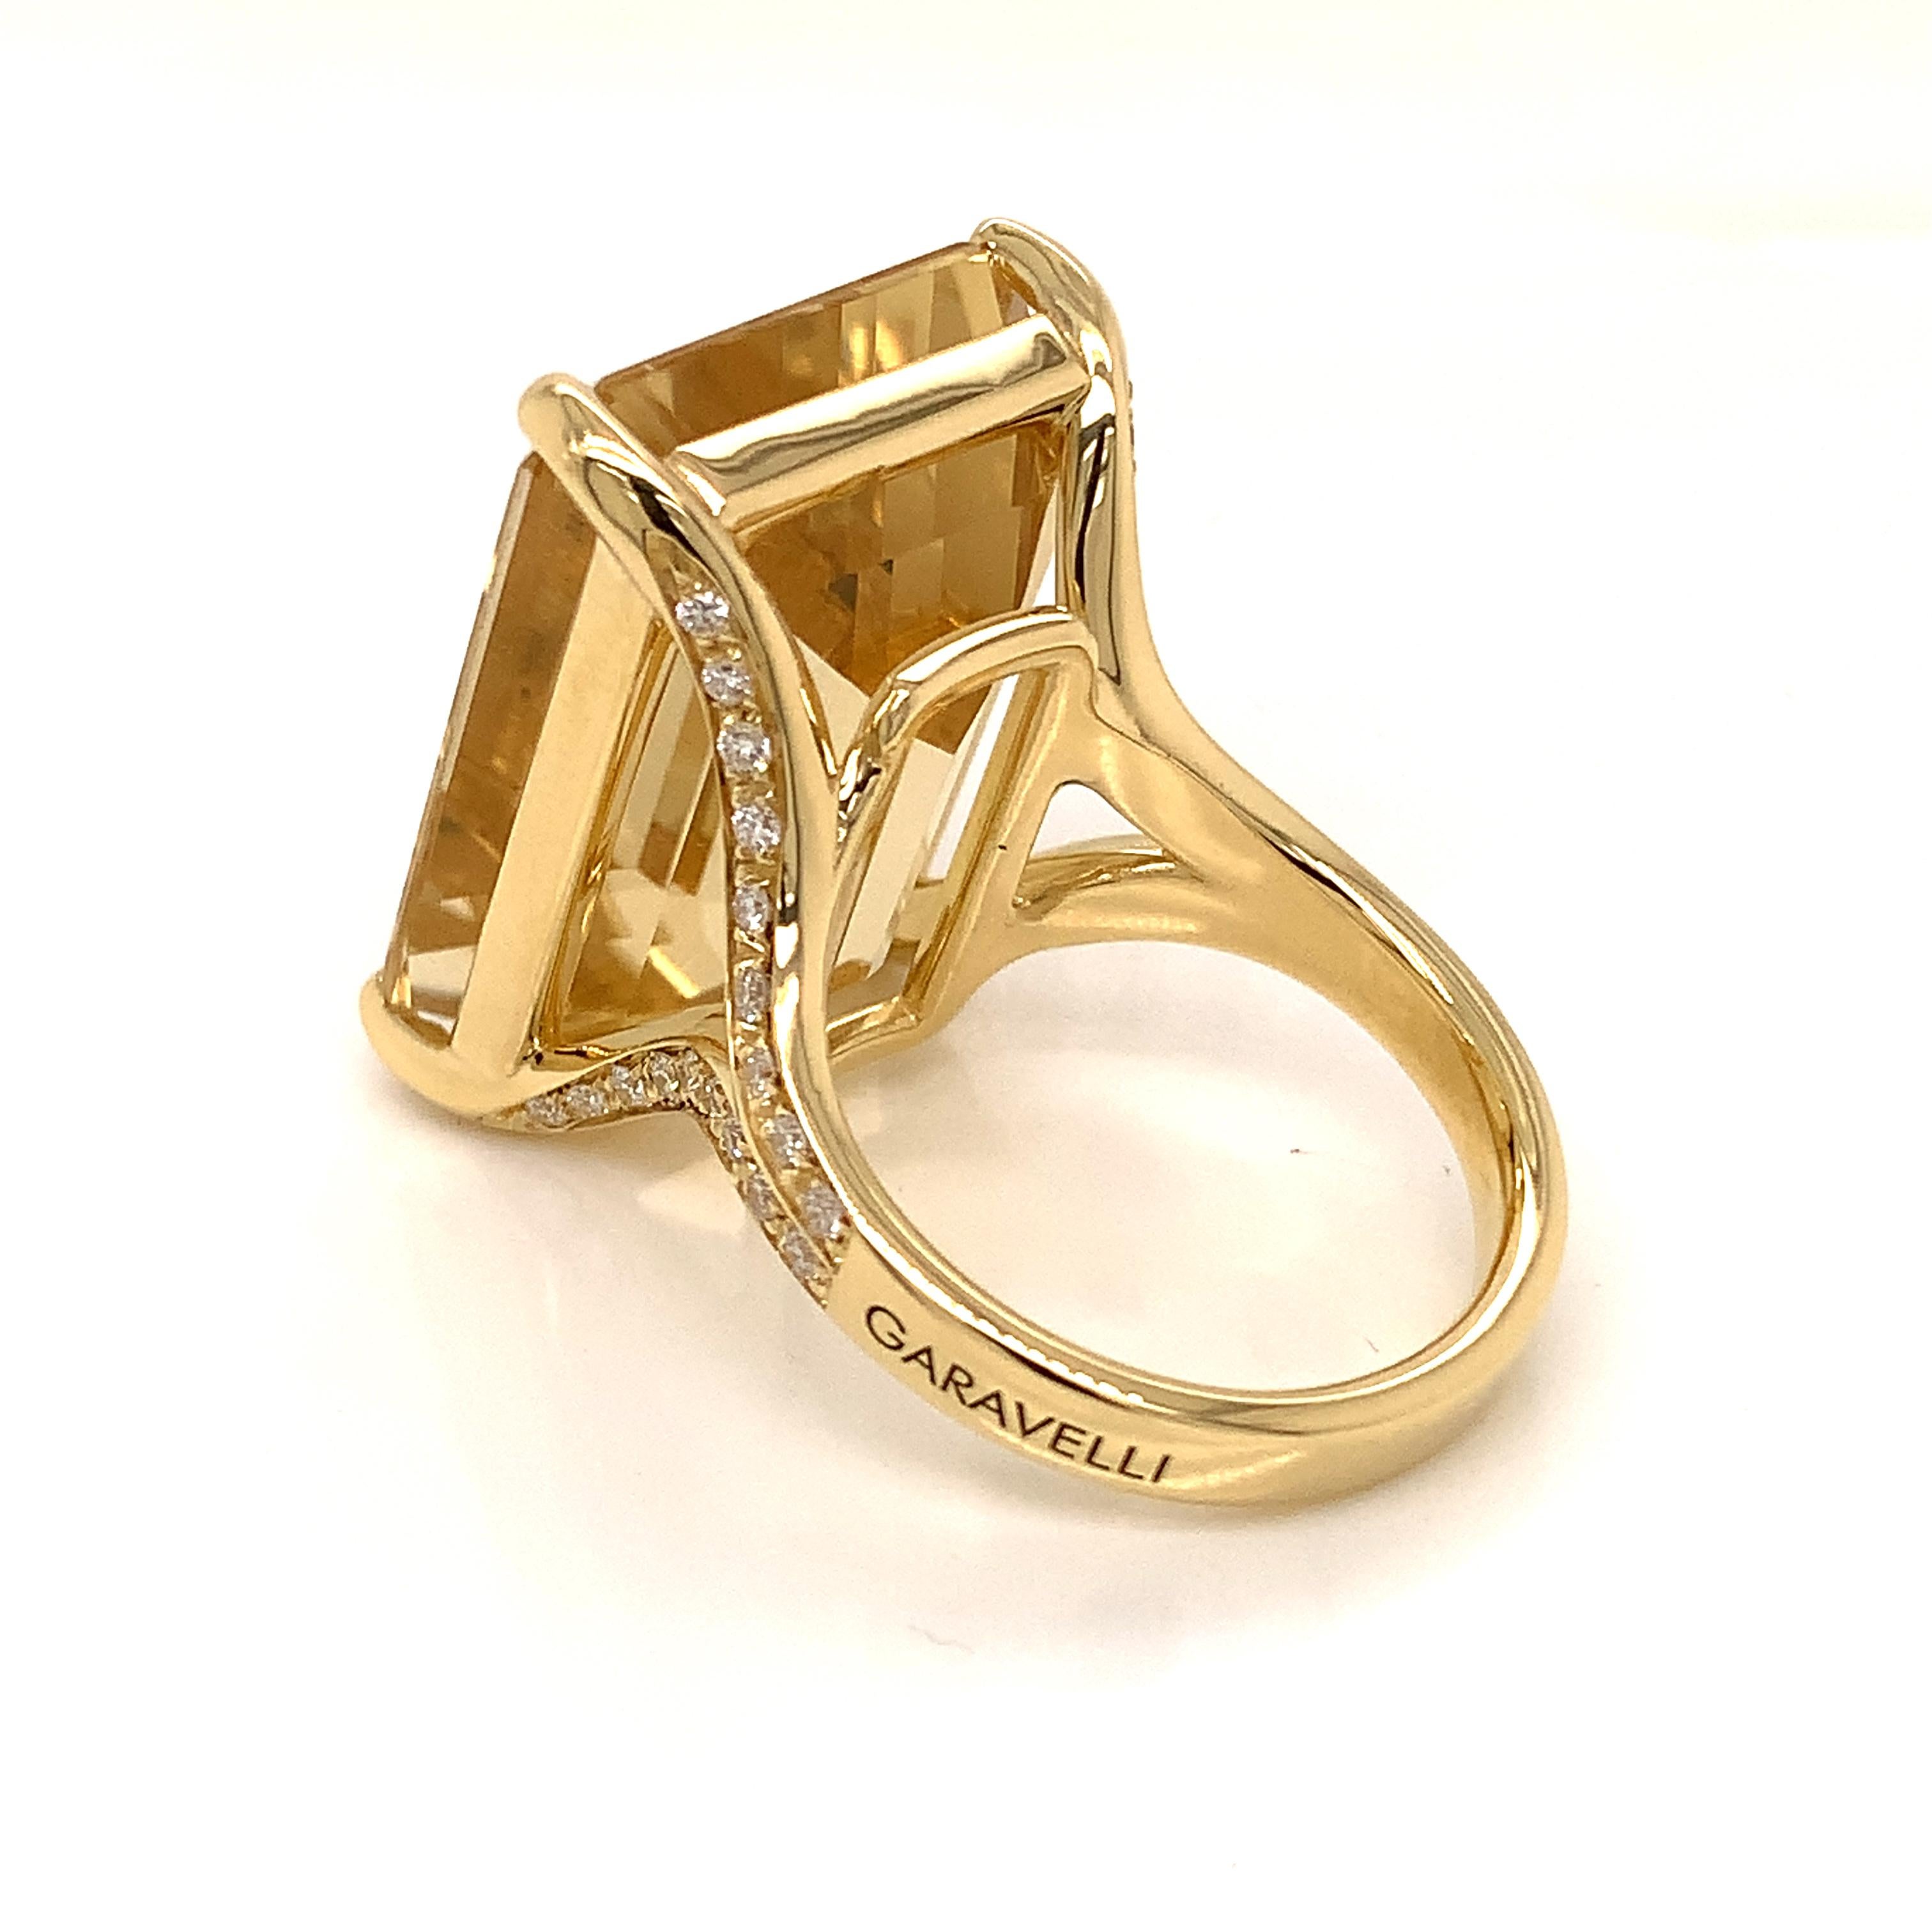 Women's 18Kt Yellow Gold Garavelli Ring with White Diamonds & Citrine